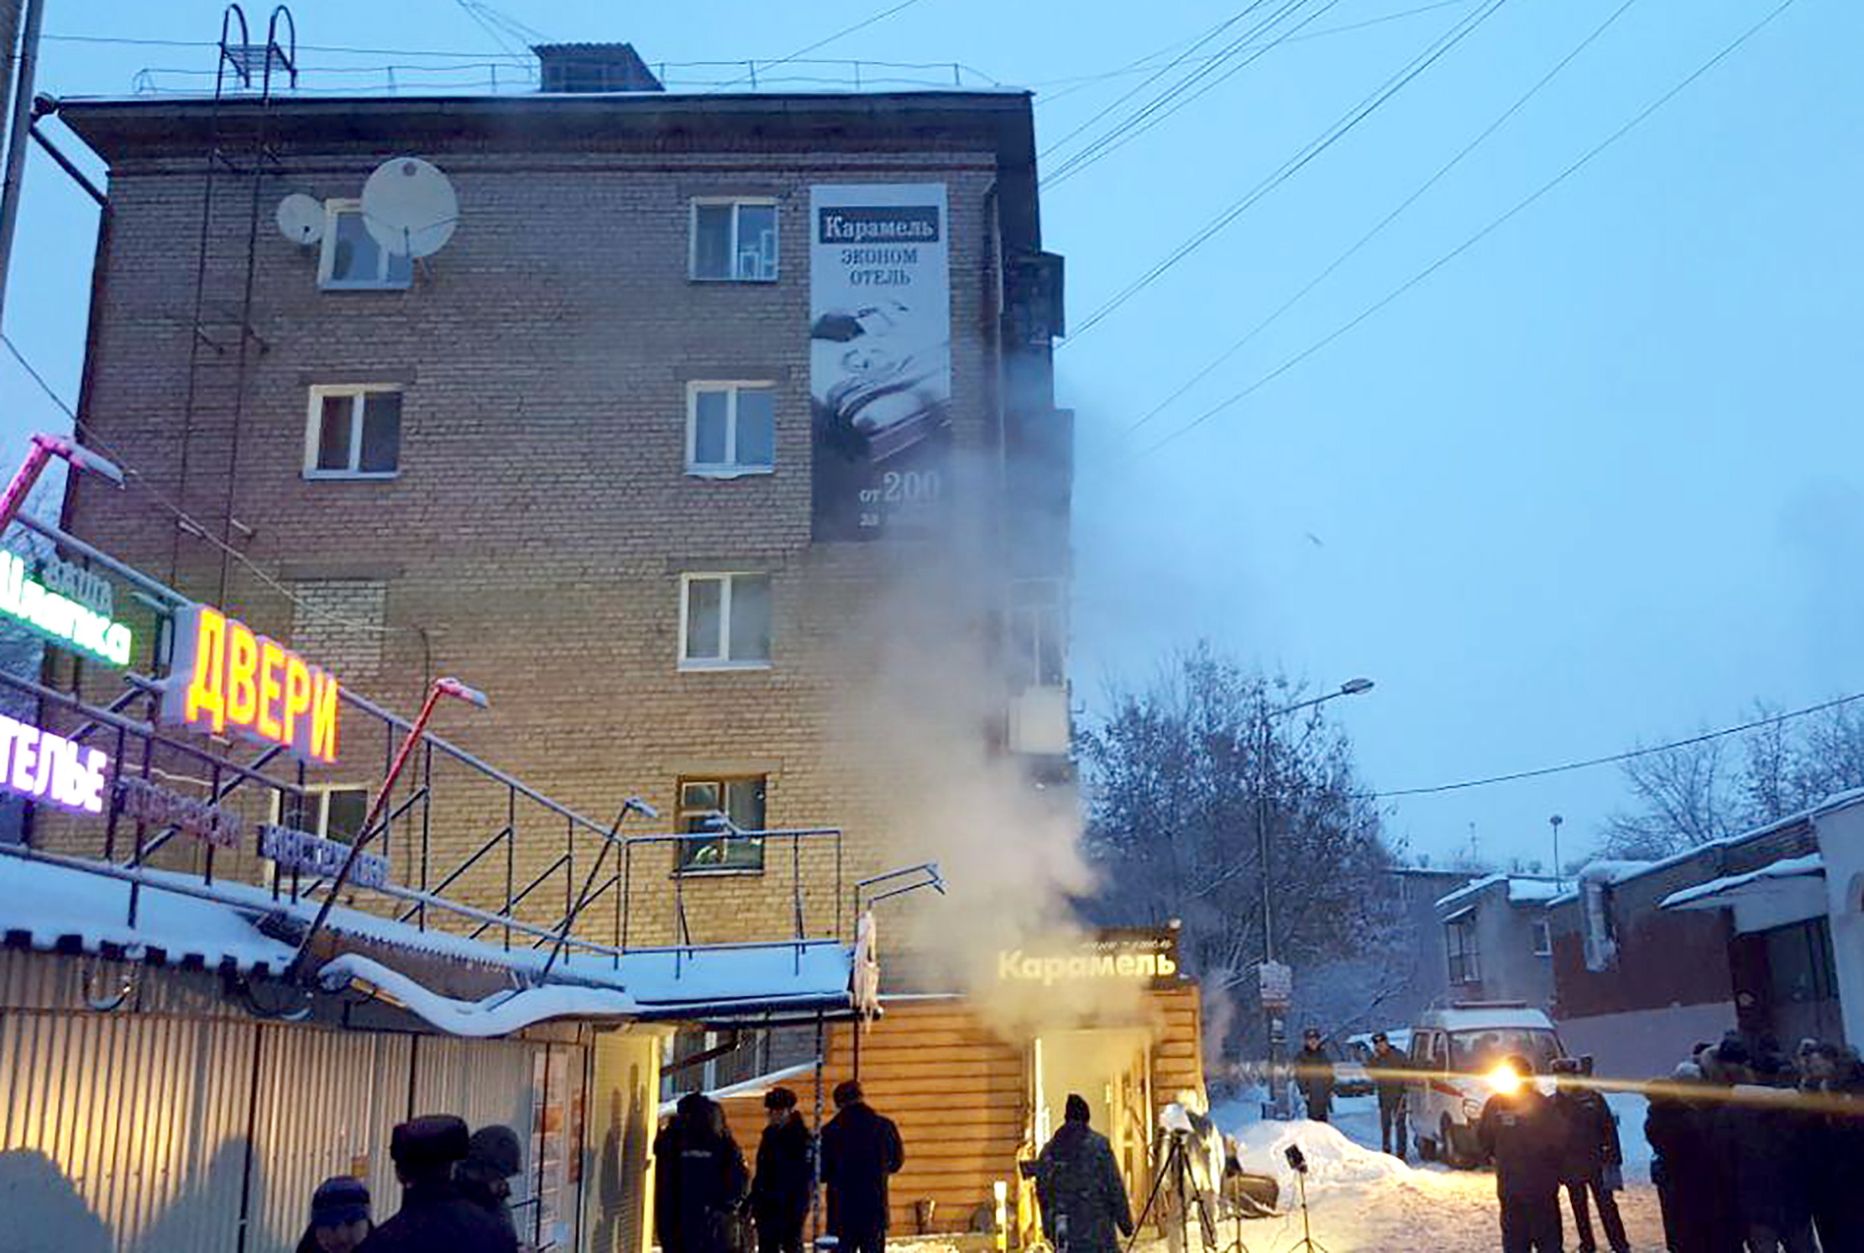 Permis asuvas väikehotellis Karamel lõhkes öösel kuumaveetoru.